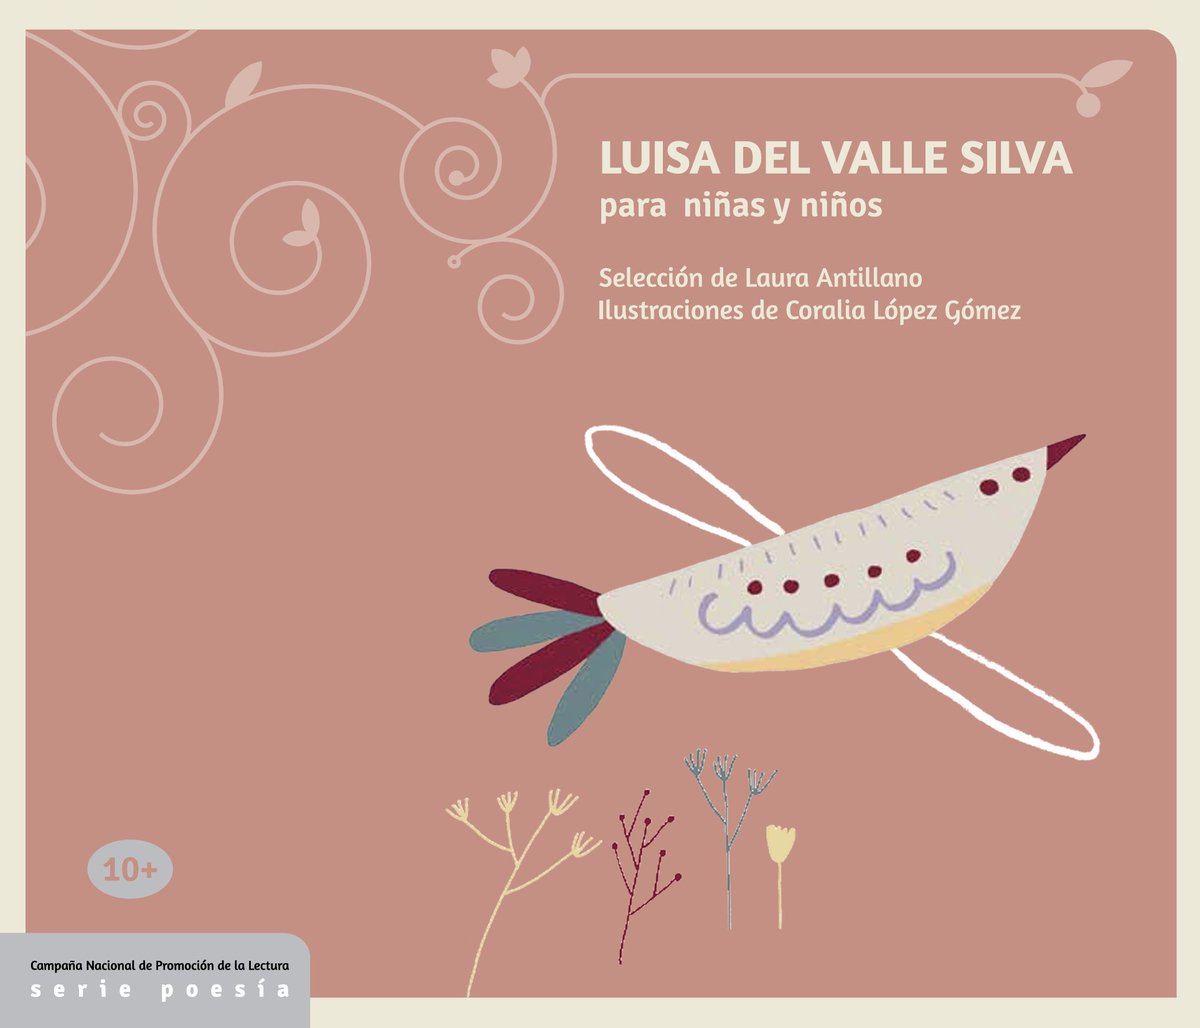 En el año 2015, el Centro Nacional del Libro (CENAL) publicó «Luisa del Valle Silva para niñas y niños», una selección de poemas realizada por Laura Antillano acompañada por ilustraciones de Coralia López Gómez. 

También disponible para descarga gratuita en la página.